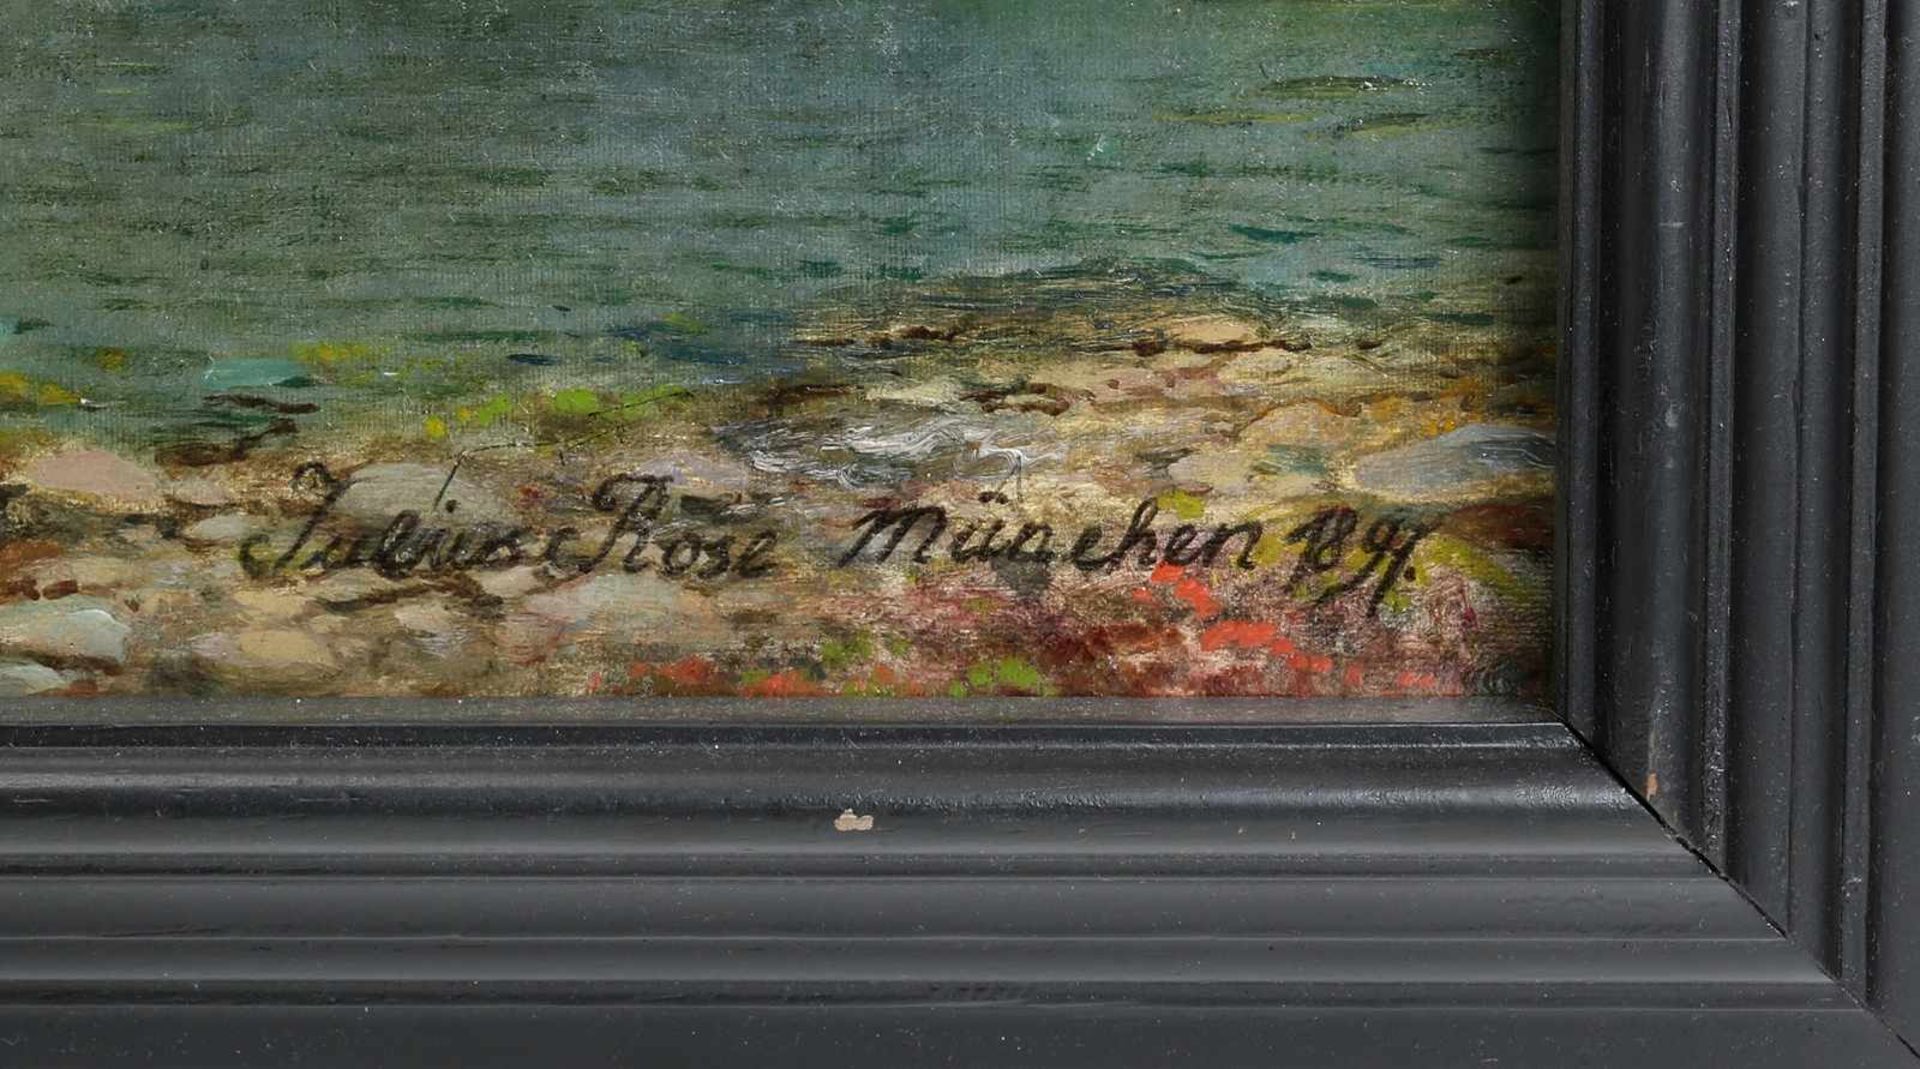 Rose, Karl Julius1828 Dresden - 1911 München. Blick auf den Hardangerfjord mit einem Postschiff an - Bild 4 aus 5